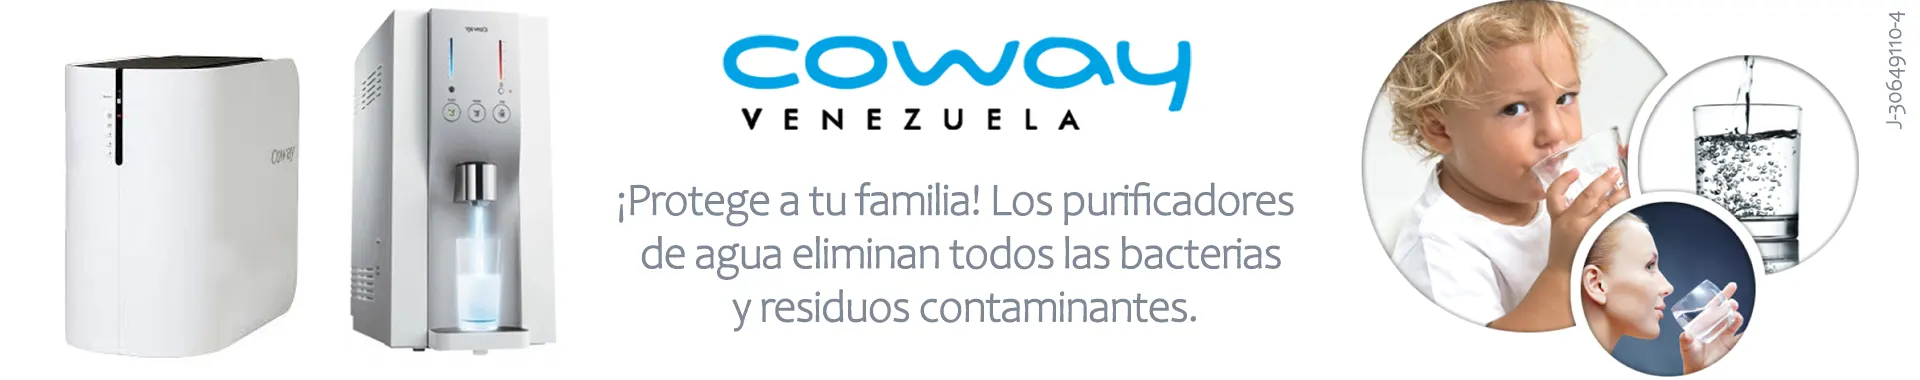 Imagen 5 del perfil de Coway Venezuela